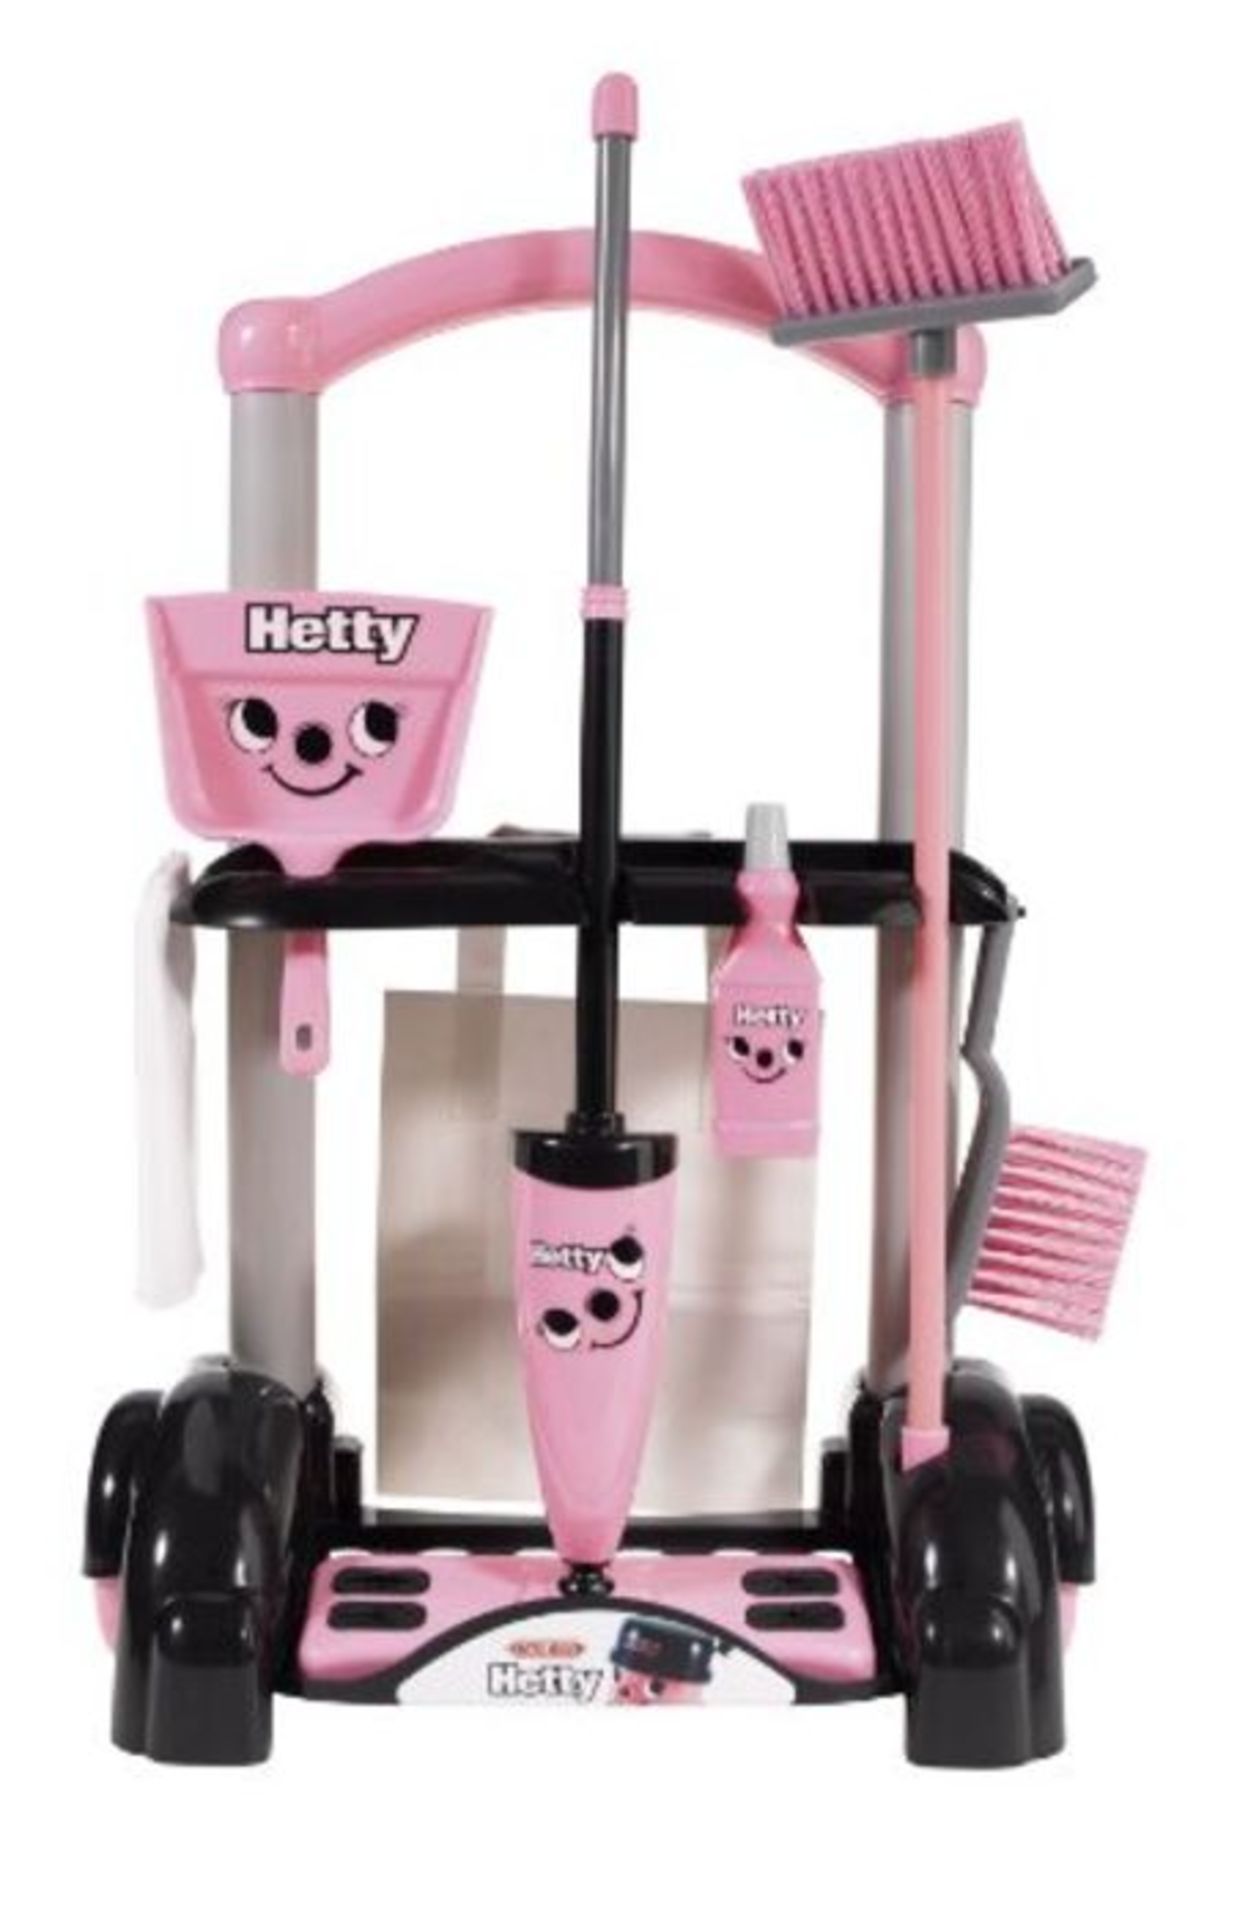 Casdon Hetty Cleaning Trolley,pink